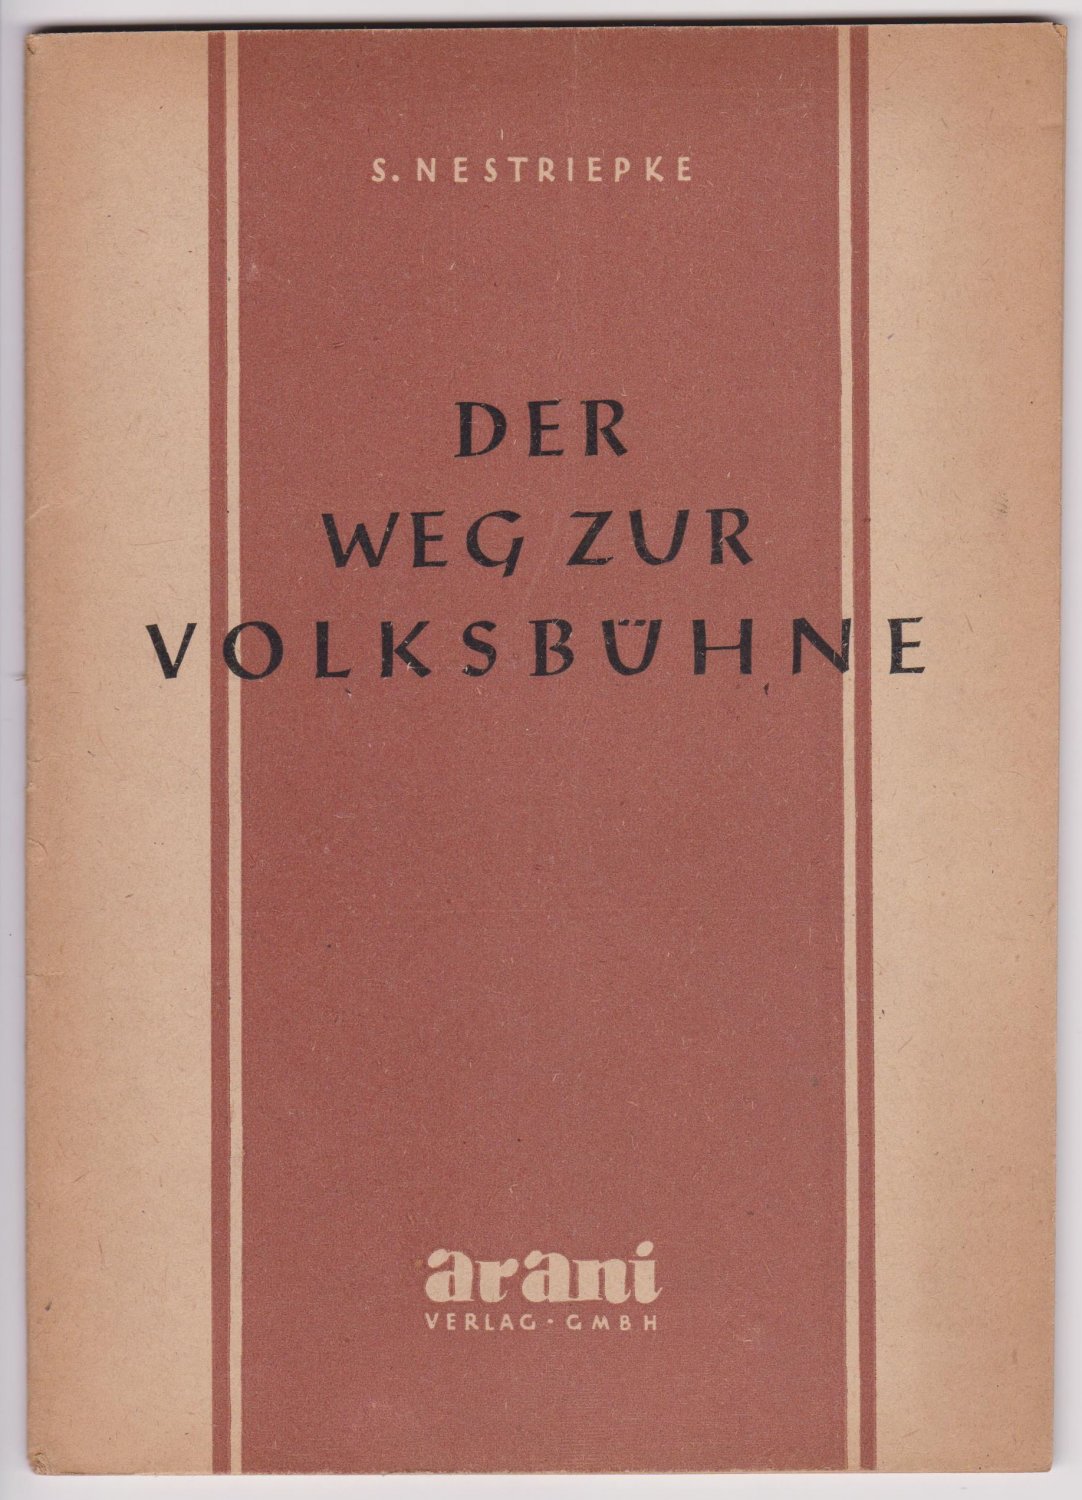 NESTRIEPKE, S.:  Der Weg zur Volksbühne. Nach einem Vortrag vor dem Hamburger Volksbühnentag 1948. 